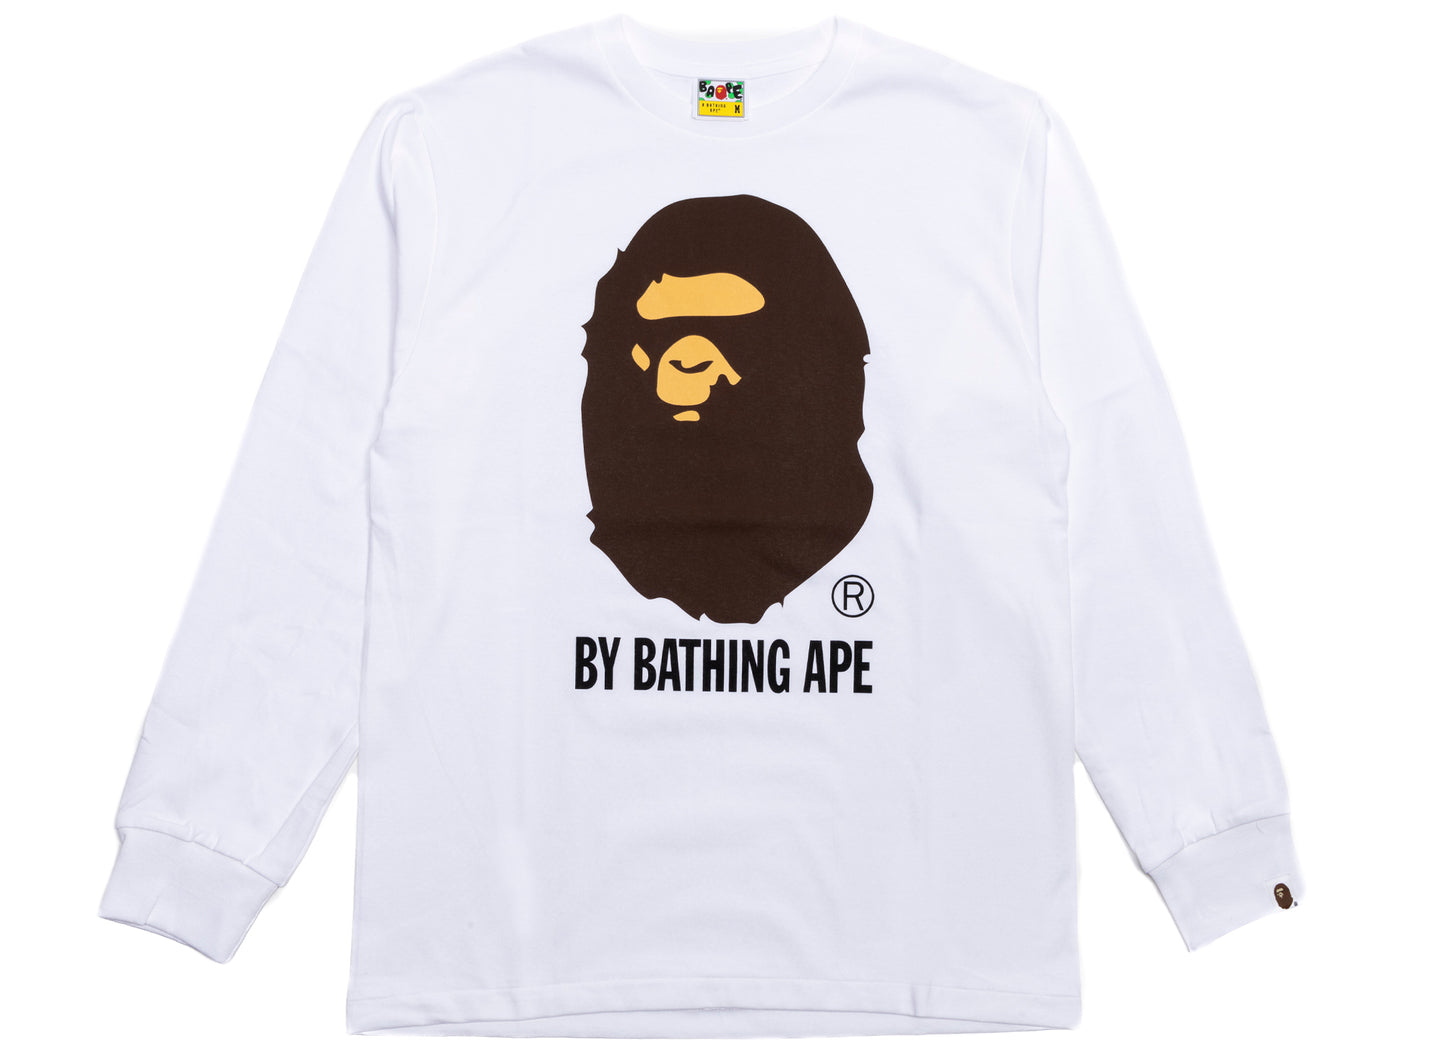 A Bathing Ape by Bathing Ape L/S Tee in White